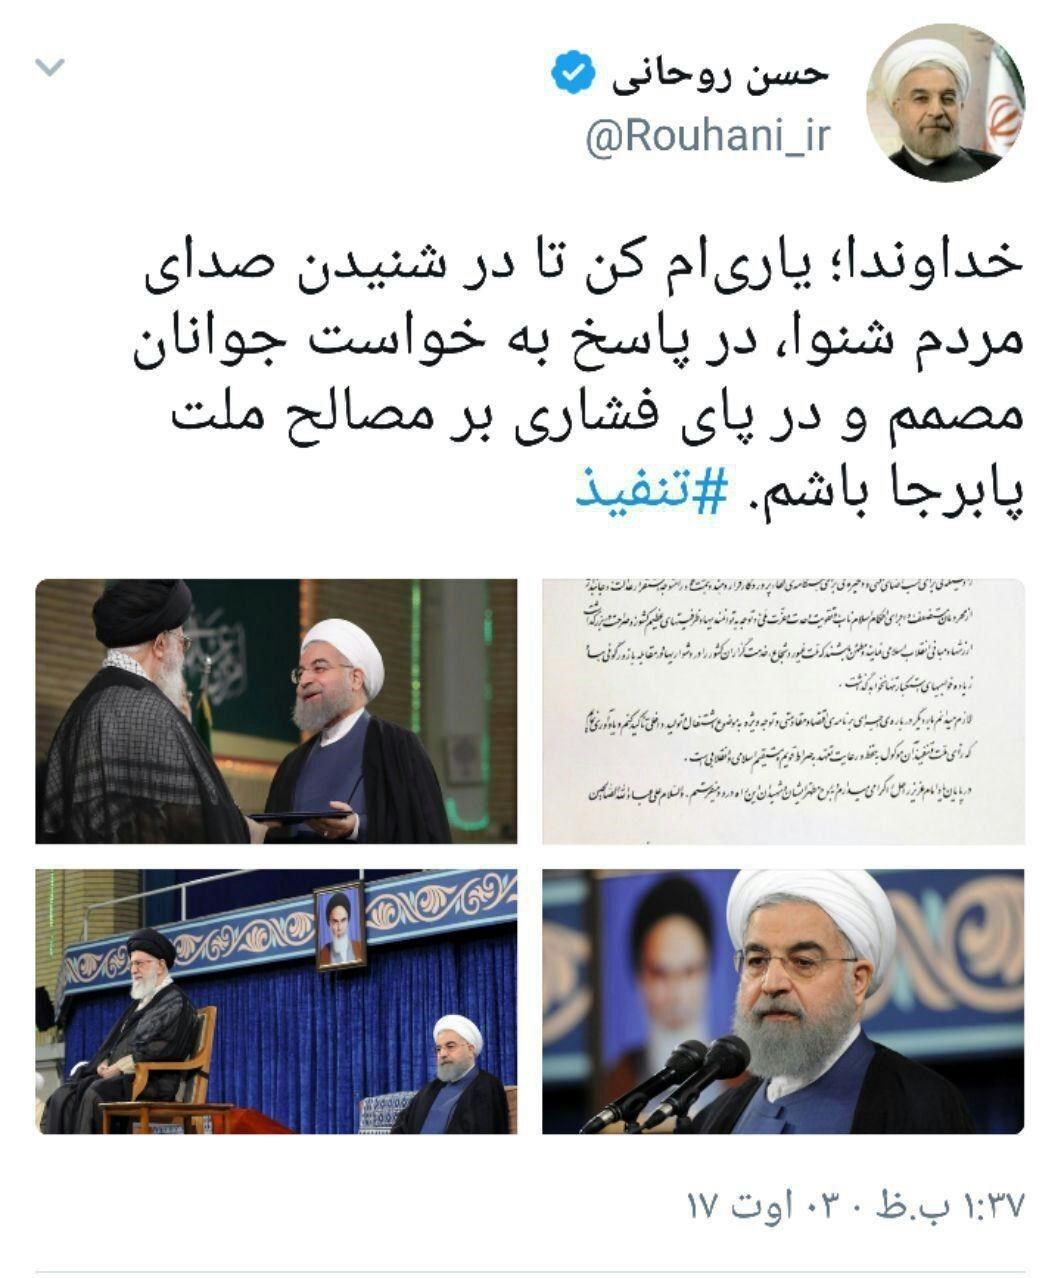 اولین اظهارنظر روحانی پس از تنفیذ حکم ریاست جمهوری